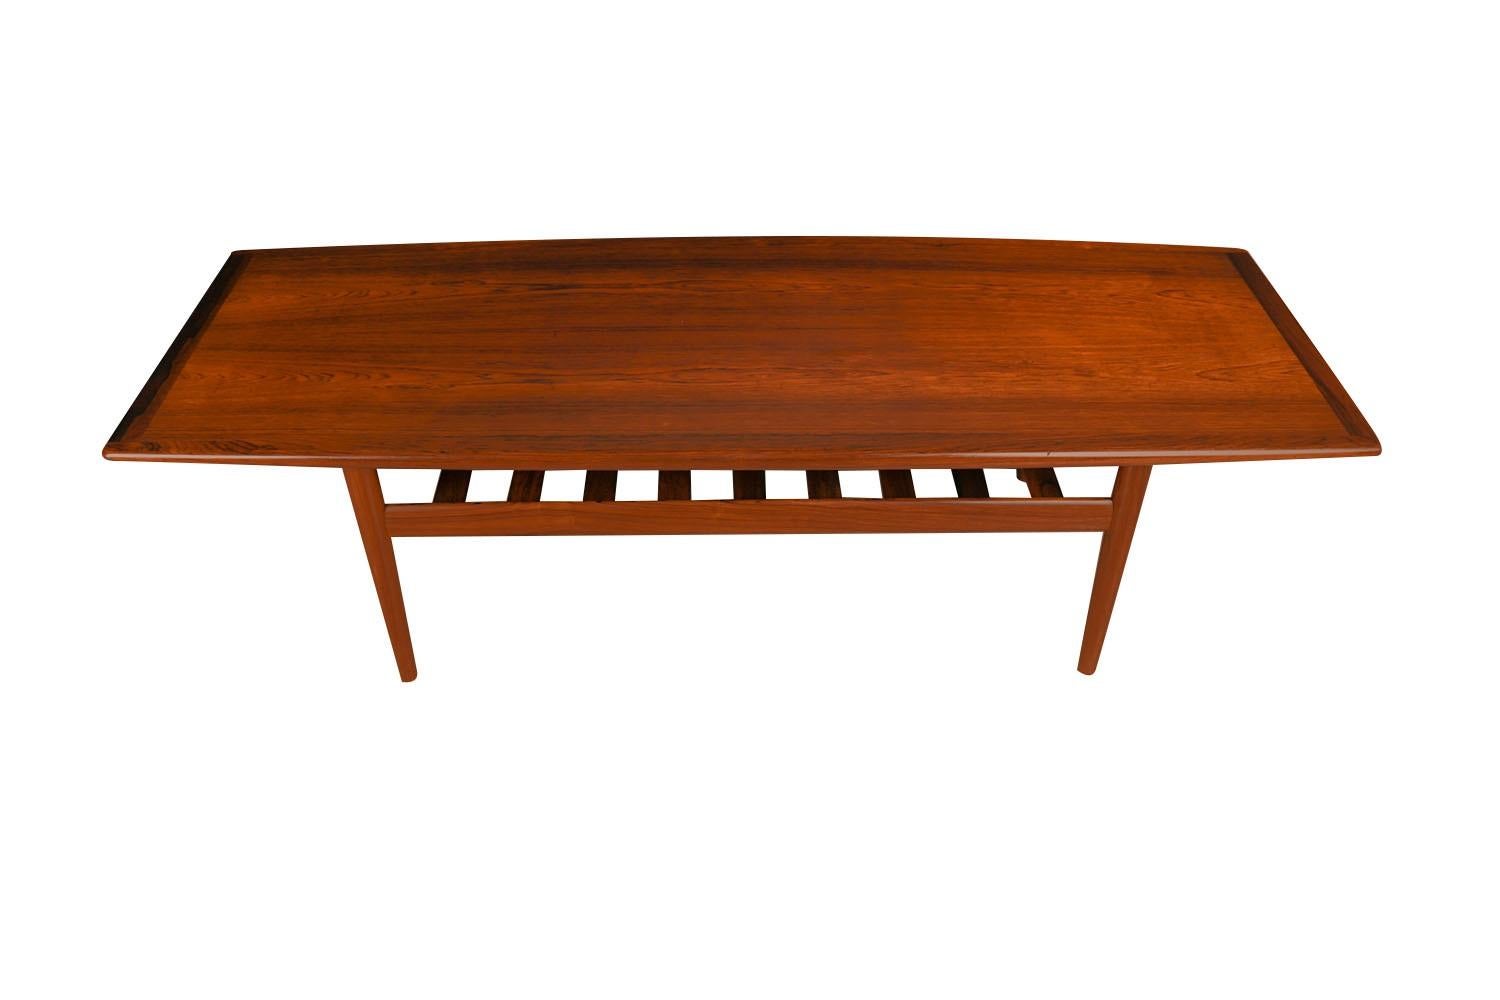 Une belle table basse danoise en bois de rose, moderne du milieu du siècle dernier, réalisée par Grete Jalk pour Glostrup Mobelfabrik, vers les années 1960. La longueur parfaite à associer à un canapé extra long. Le plateau rectangulaire est doté